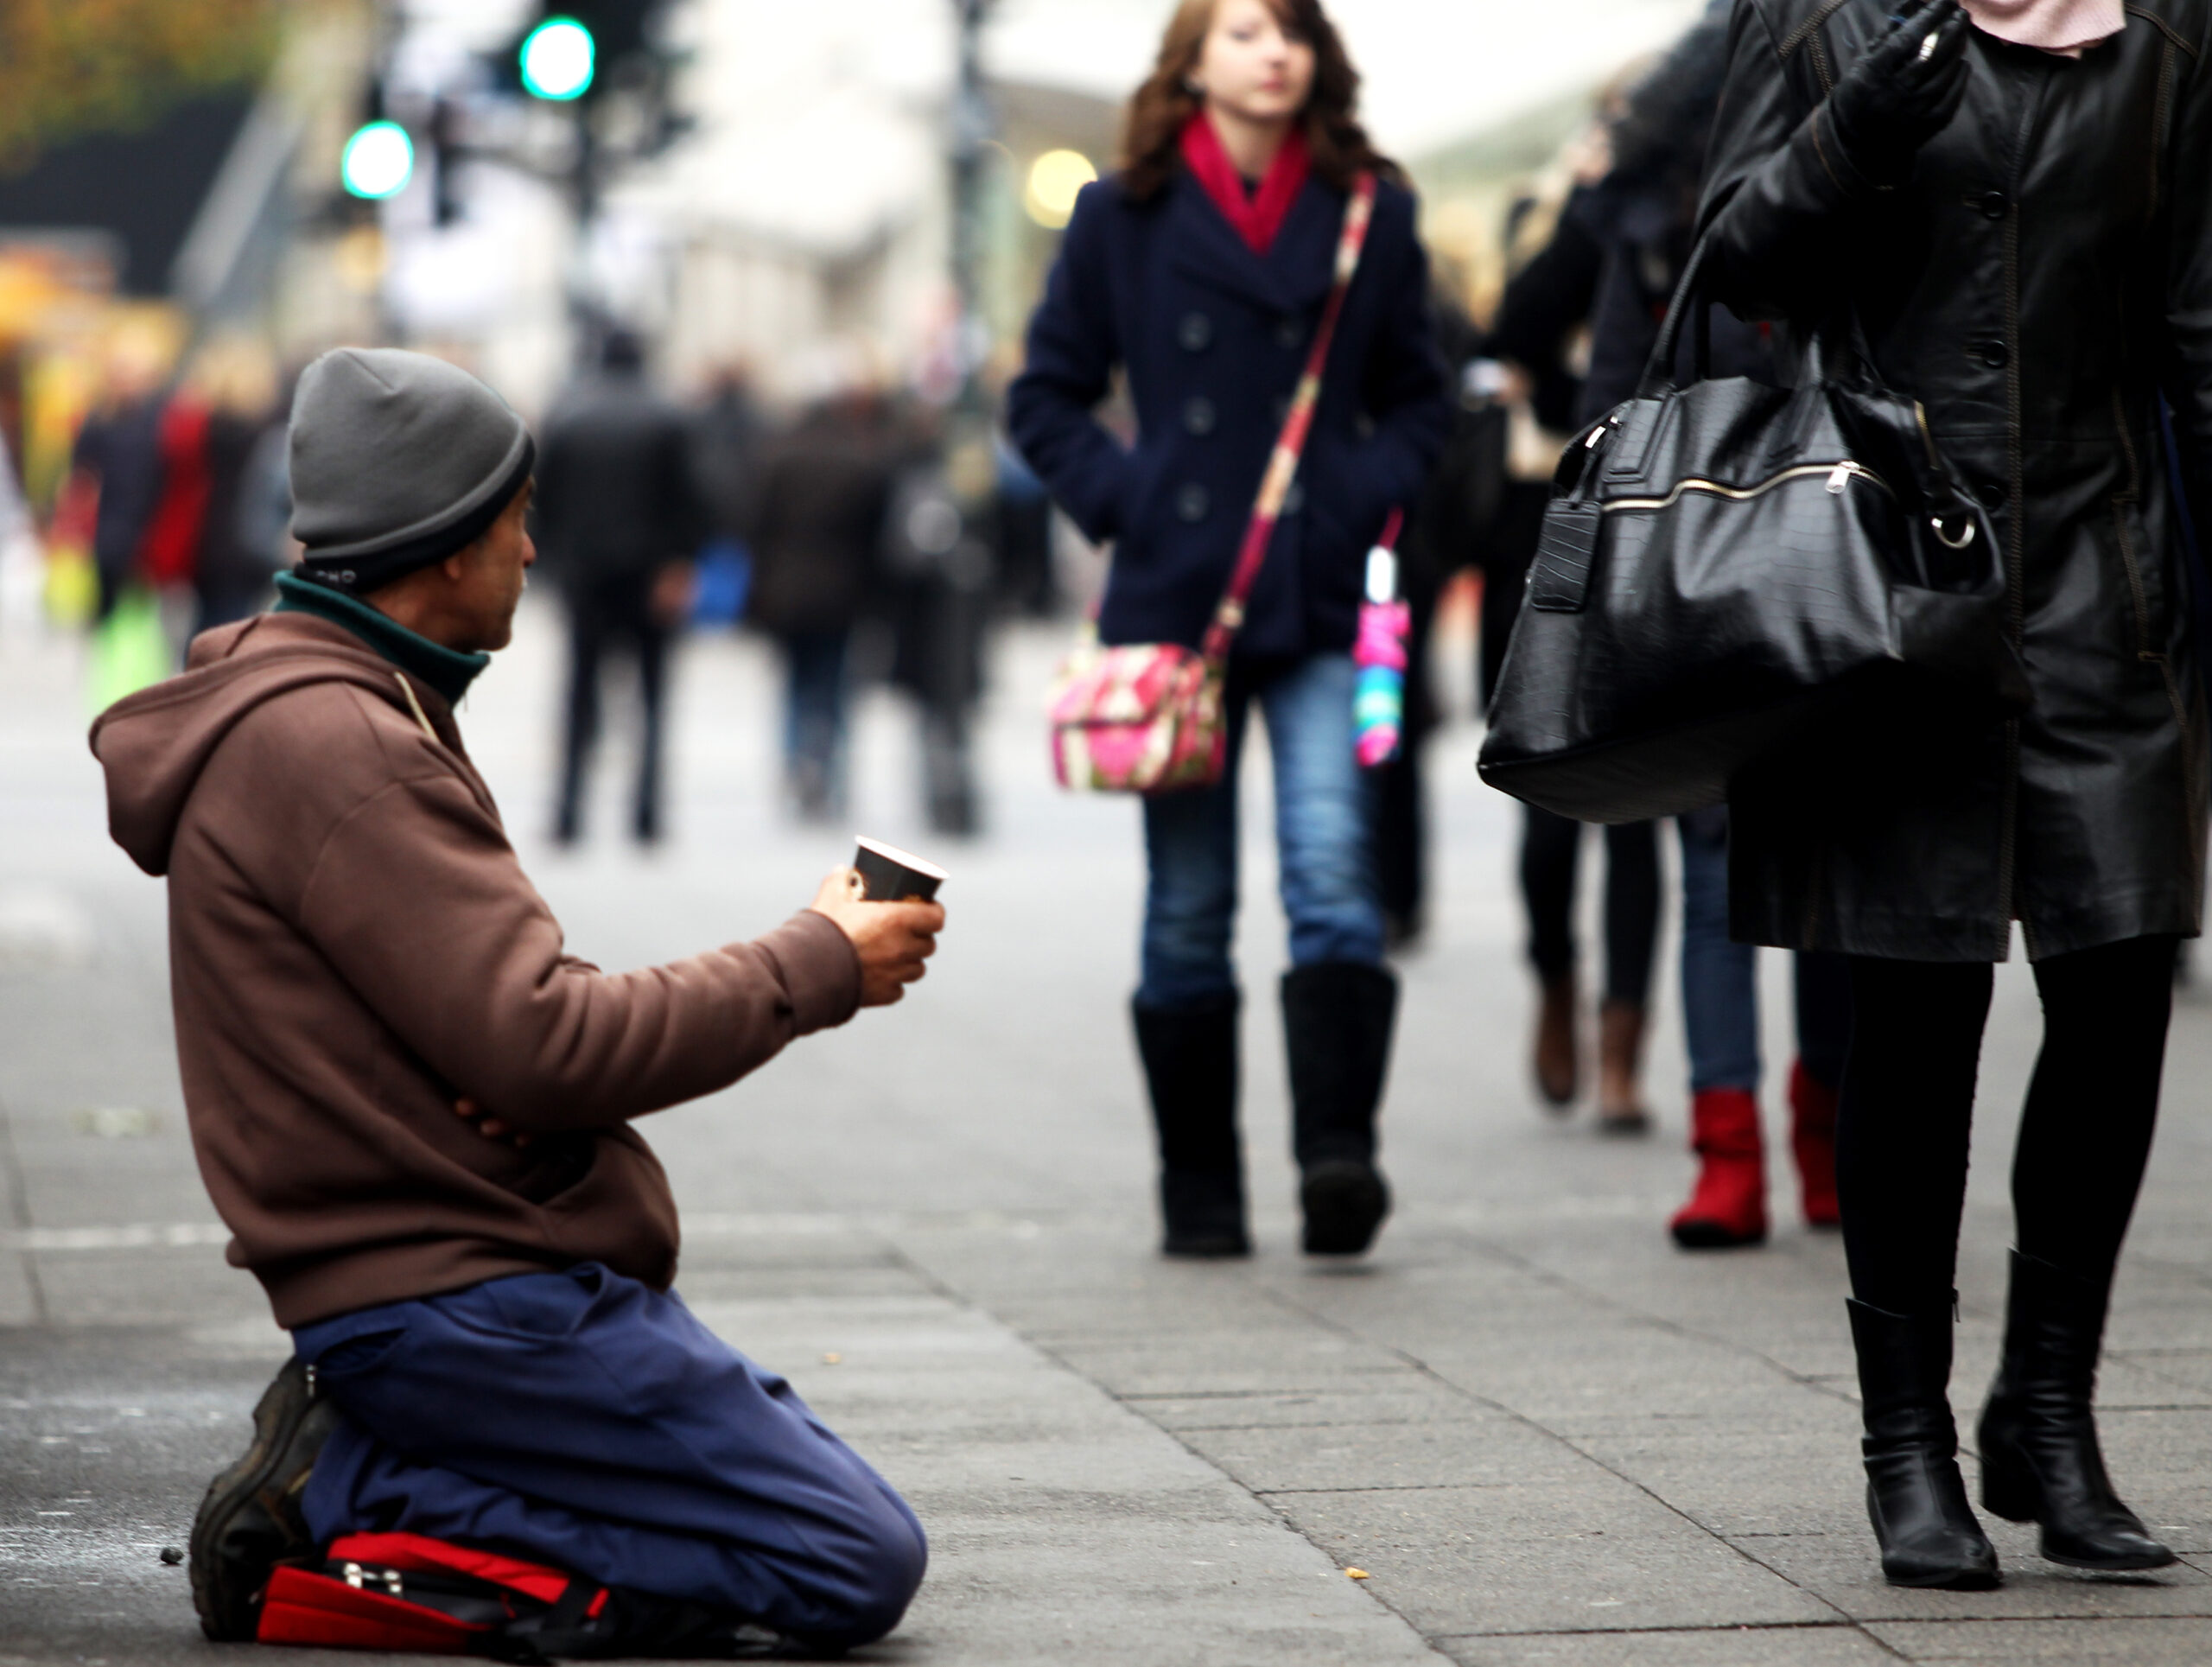 Ein bedürftiger Mann bettelt in einer Einkaufsstraße (Symbolbild).